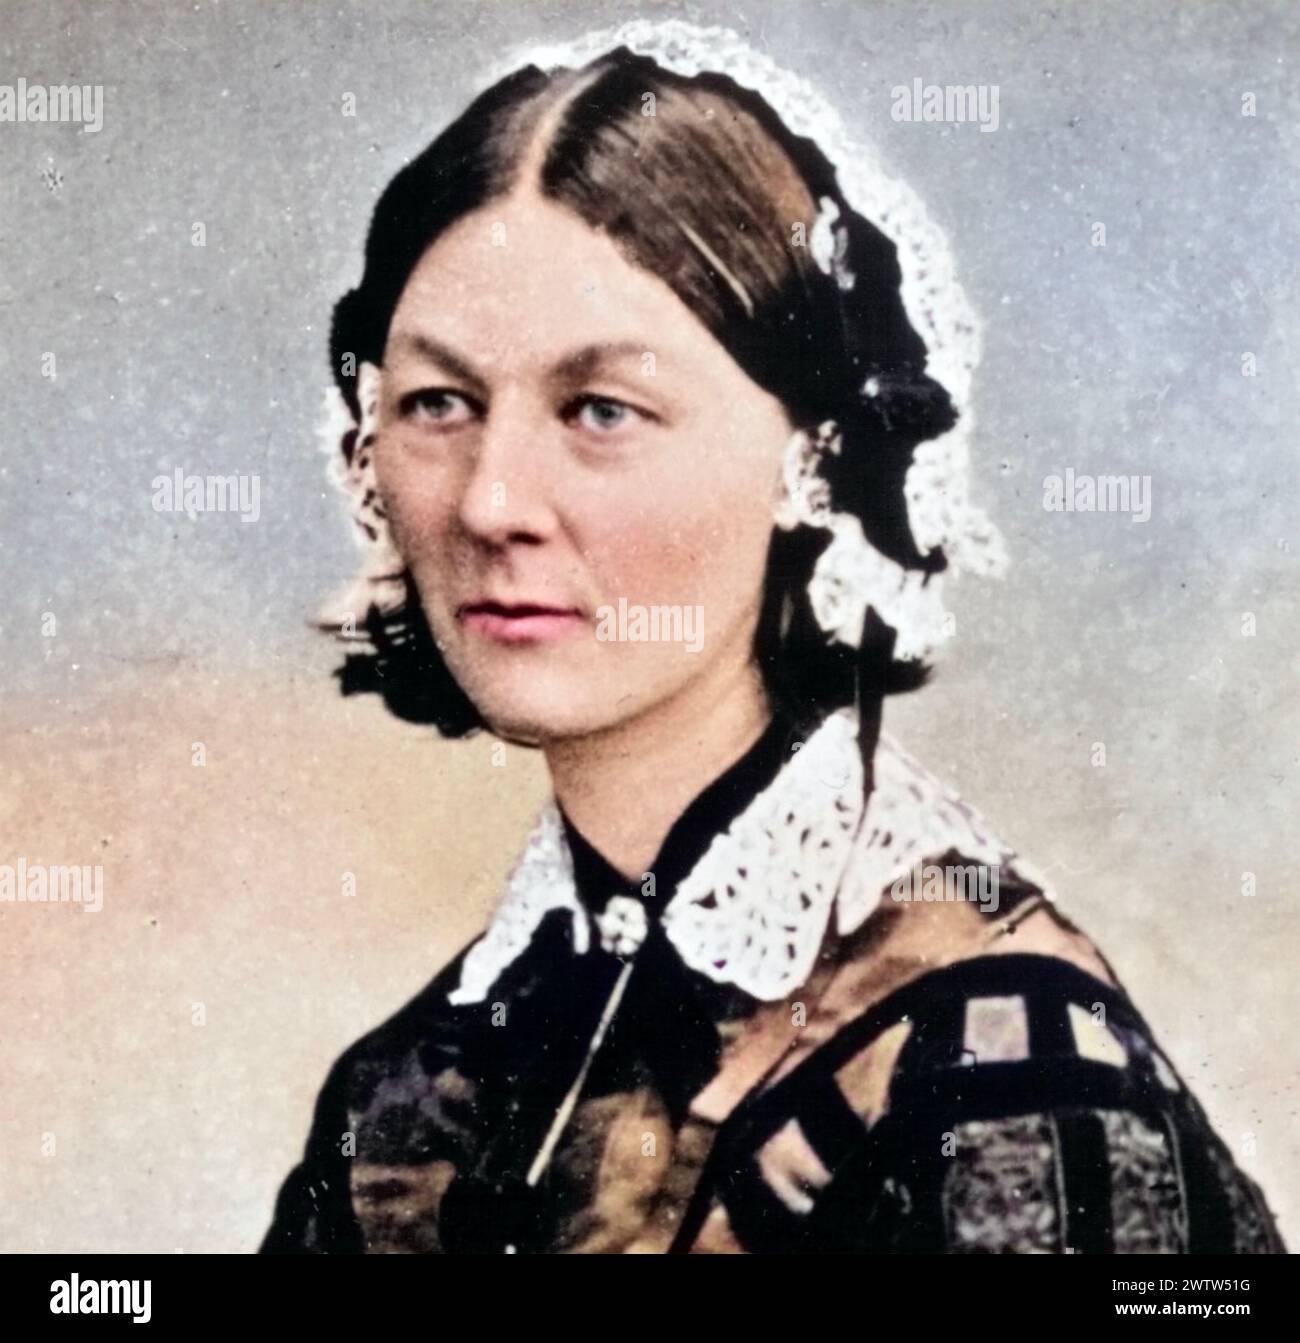 FLORENCE NIGHTINGALE (1820-1910) riformatore sociale inglese e fondatore dell'infermieristica moderna, intorno al 1860 Foto Stock